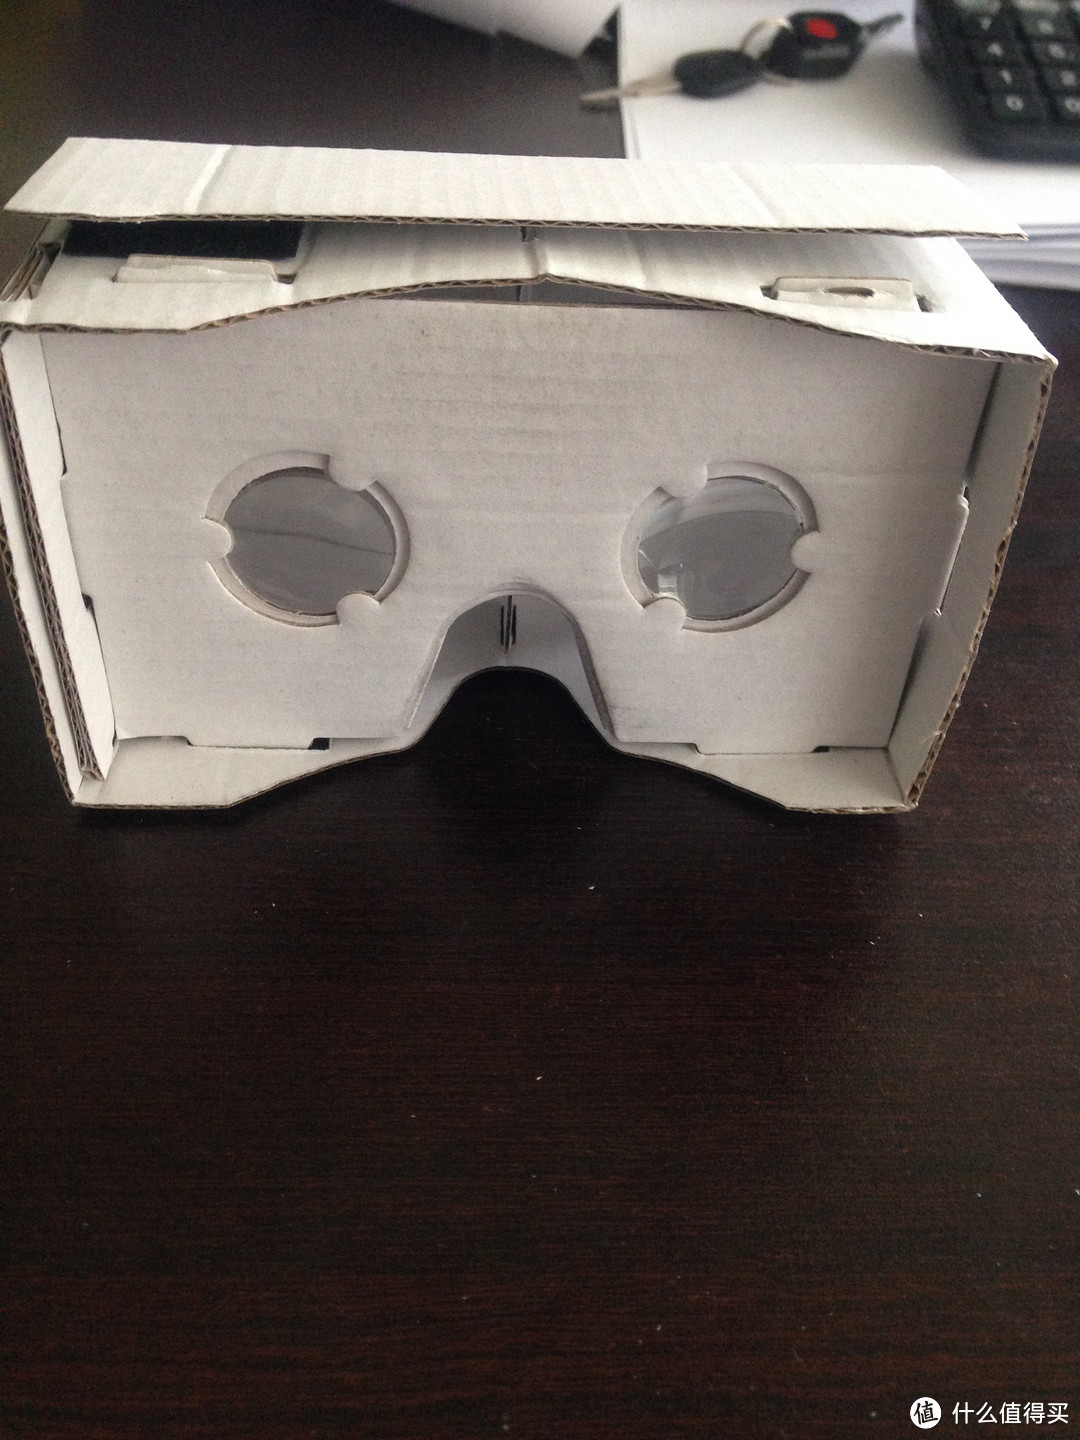 虚拟实境！祖国版 Google Cardboard 谷歌虚拟现实纸盒 简单体验